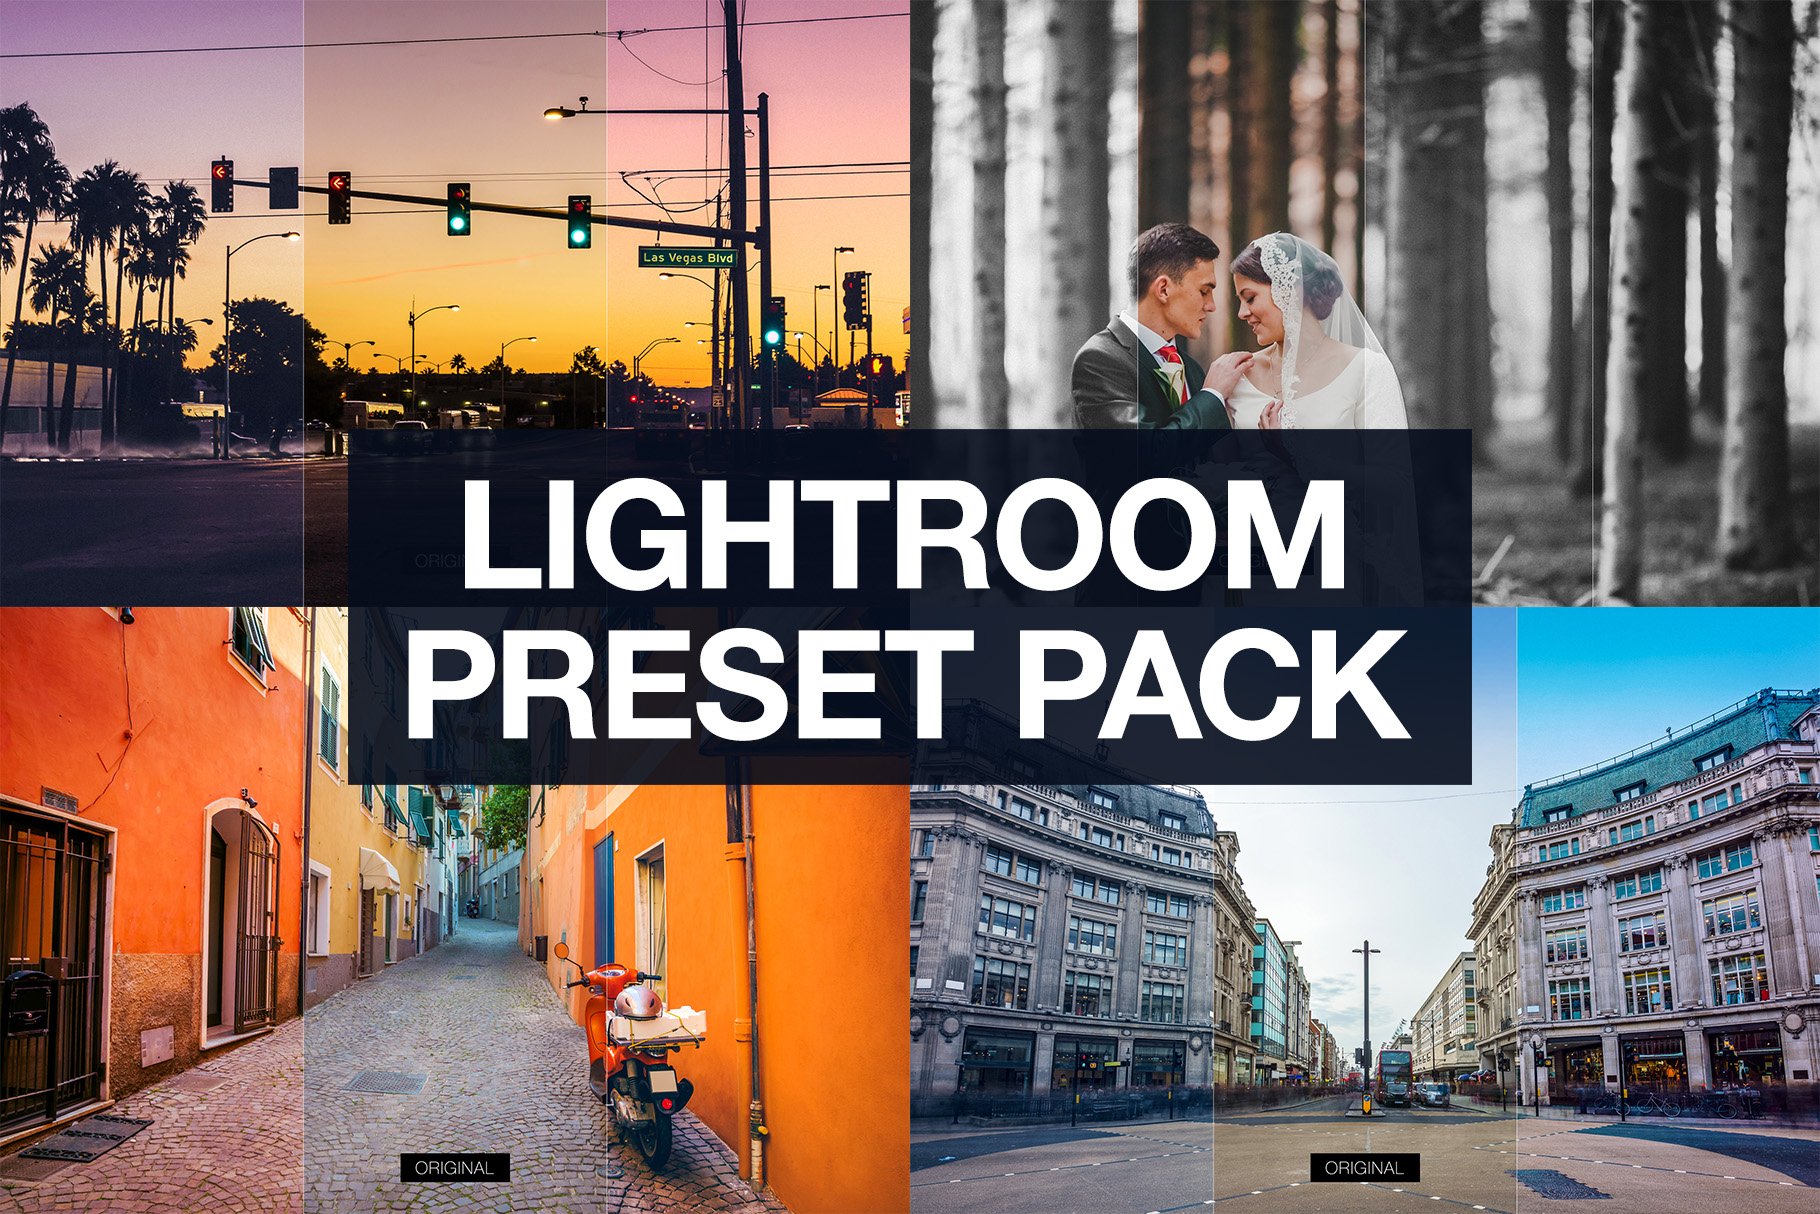 Lightroom Preset Packcover image.